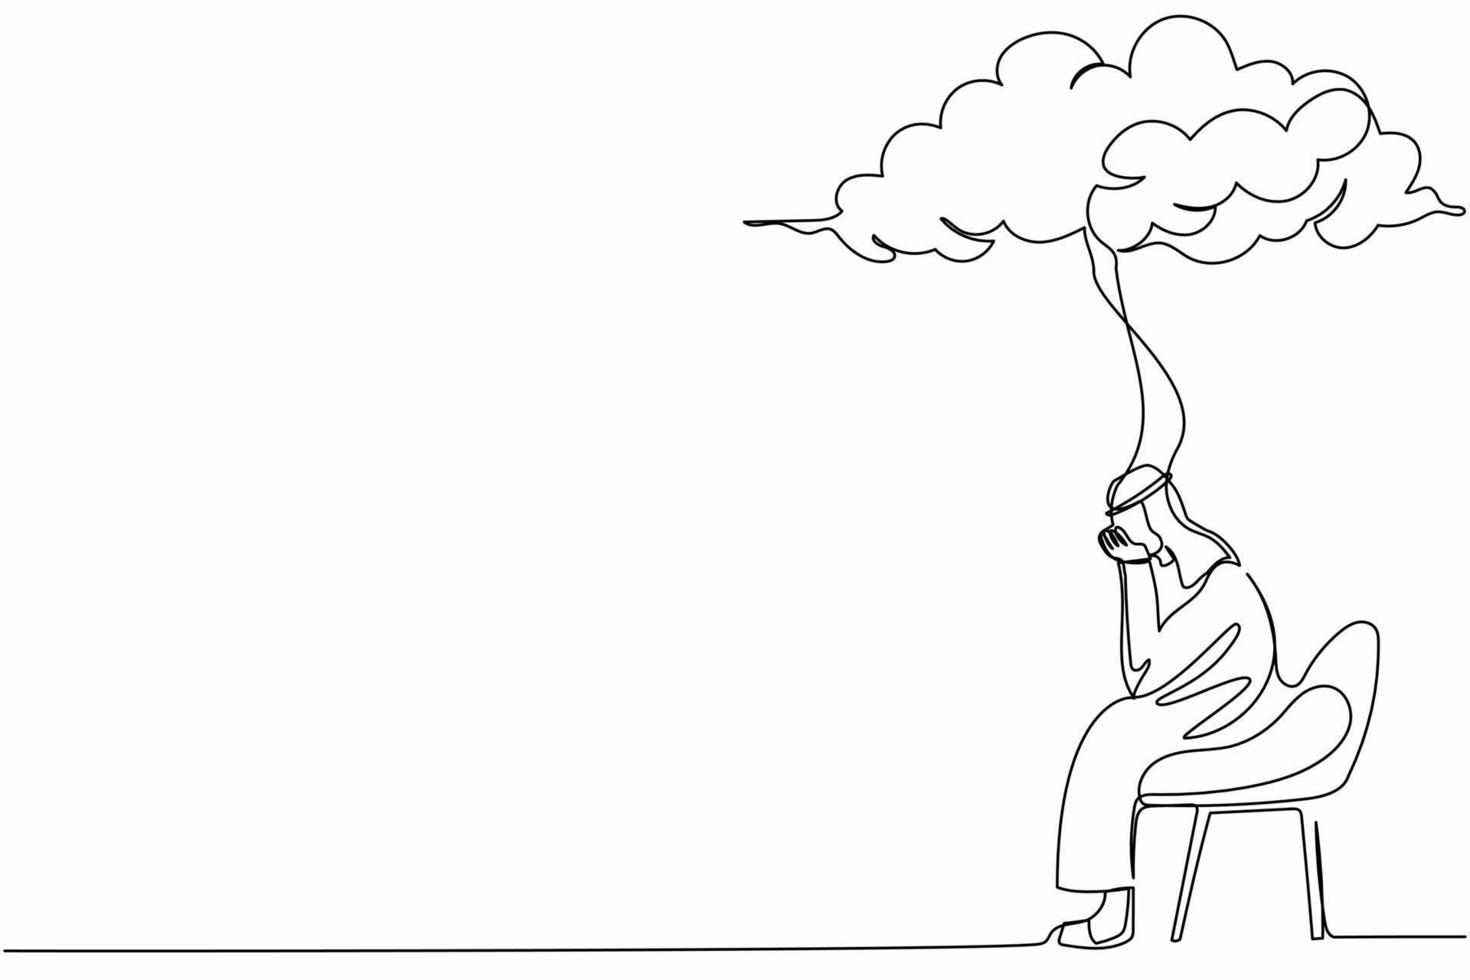 unico disegno a linea continua tristezza uomo d'affari arabo seduto su una sedia sotto la nuvola di pioggia. preoccupato per il fallimento degli affari, il collasso dell'economia, la crisi economica. illustrazione vettoriale di un disegno di linea